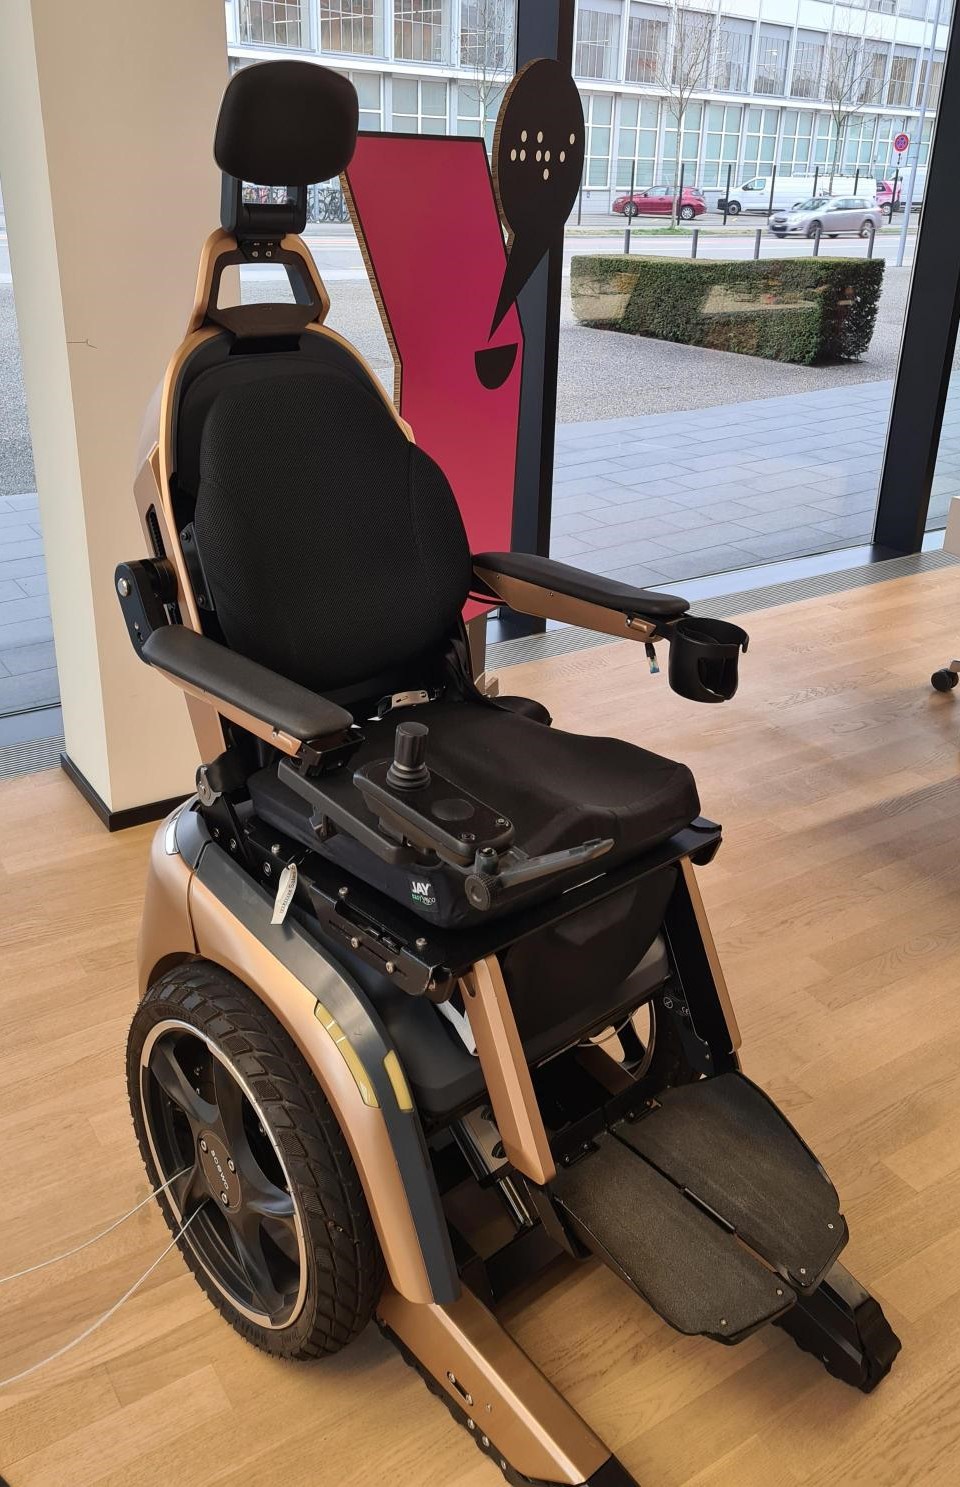 Es ist der scewo abgebildet. Ein automatisierter Rollstuhl mit der Möglichkeit Stufen zu überwinden. 